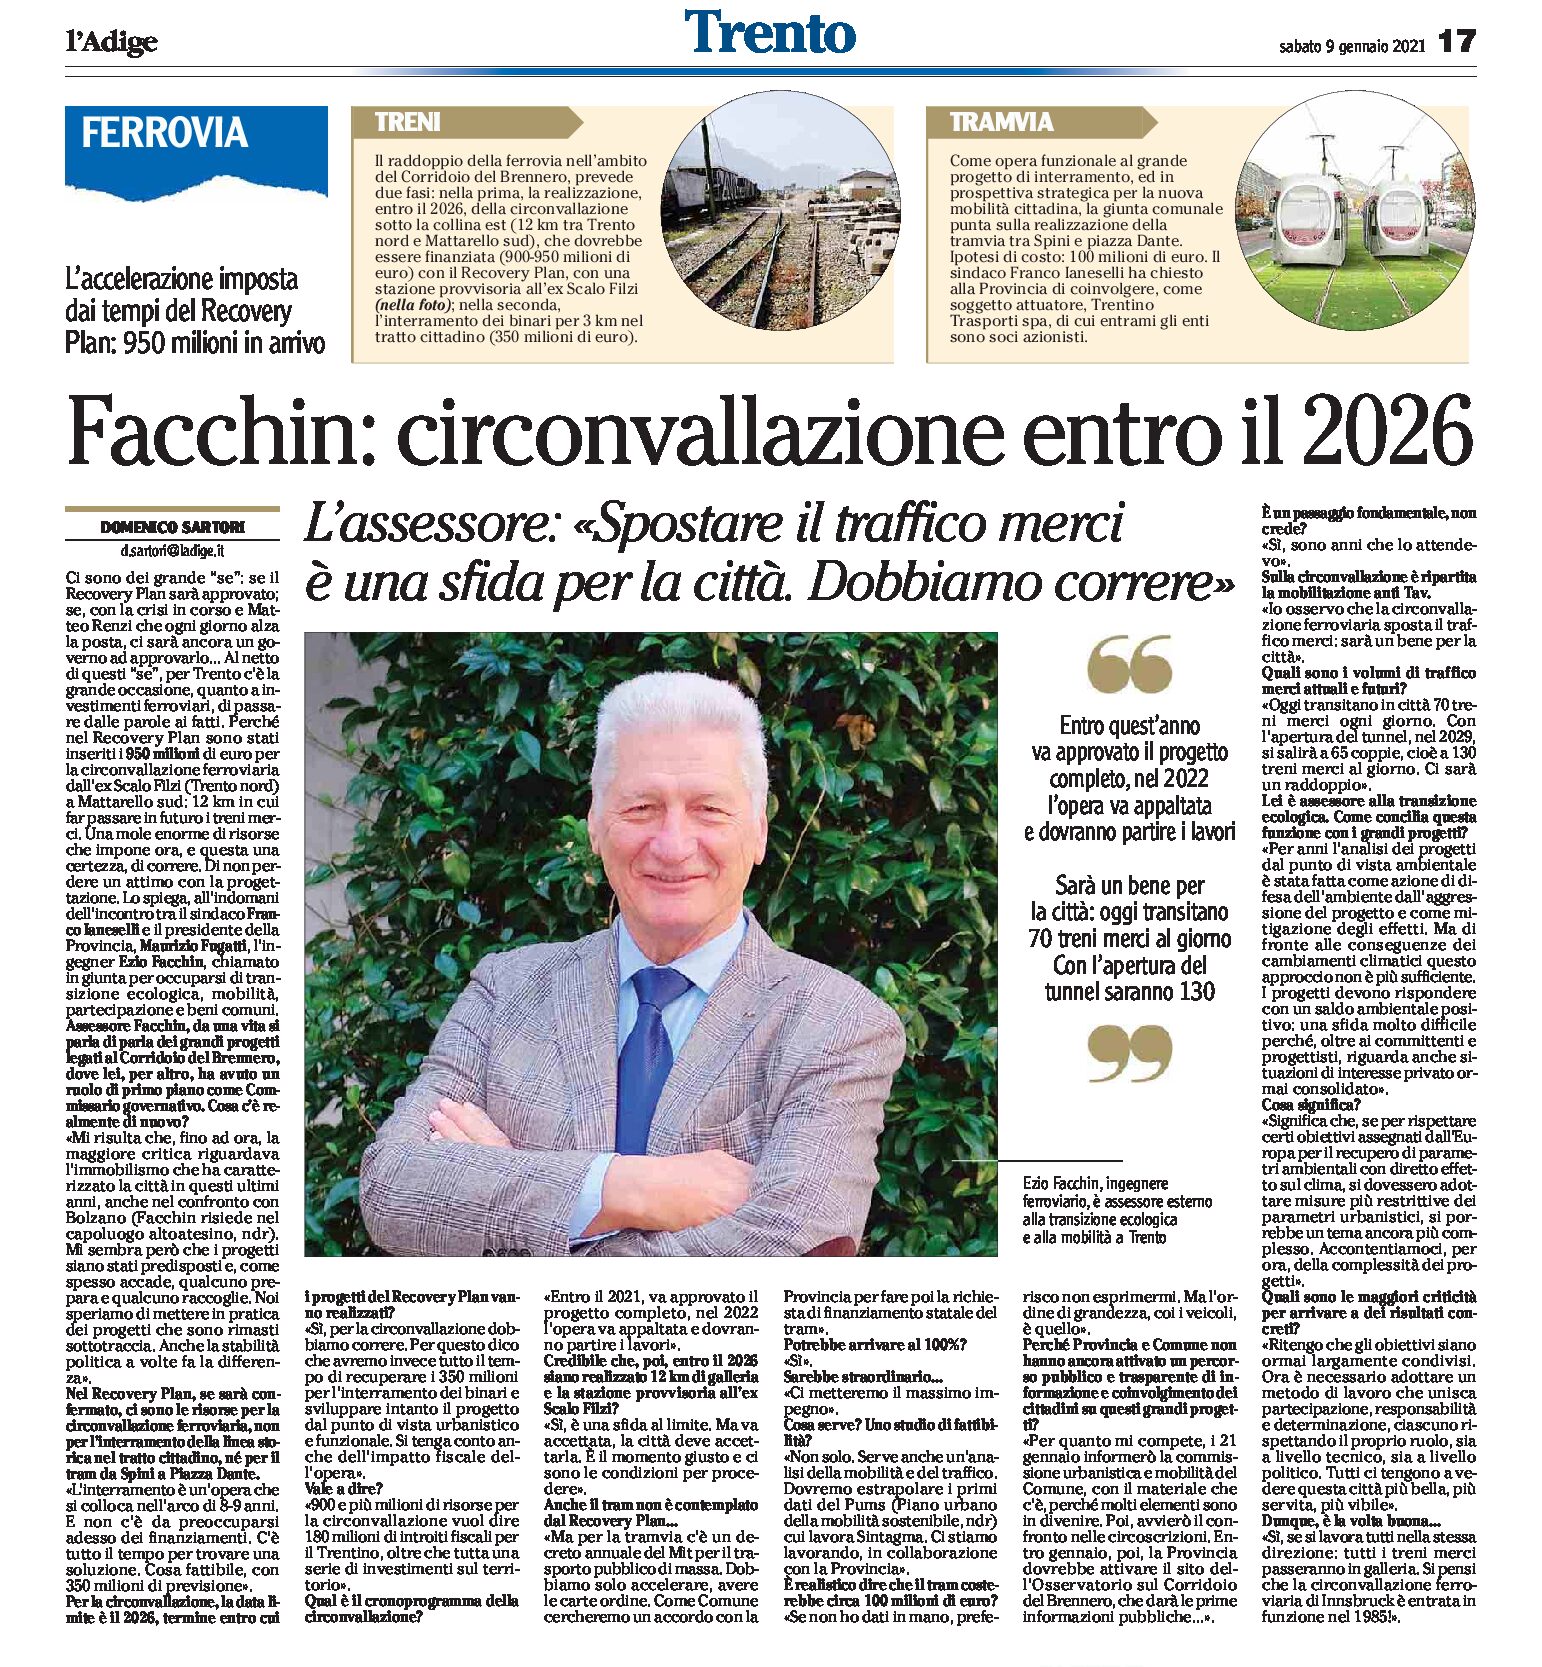 Trento: intervista a Facchin, circonvallazione entro il 2026